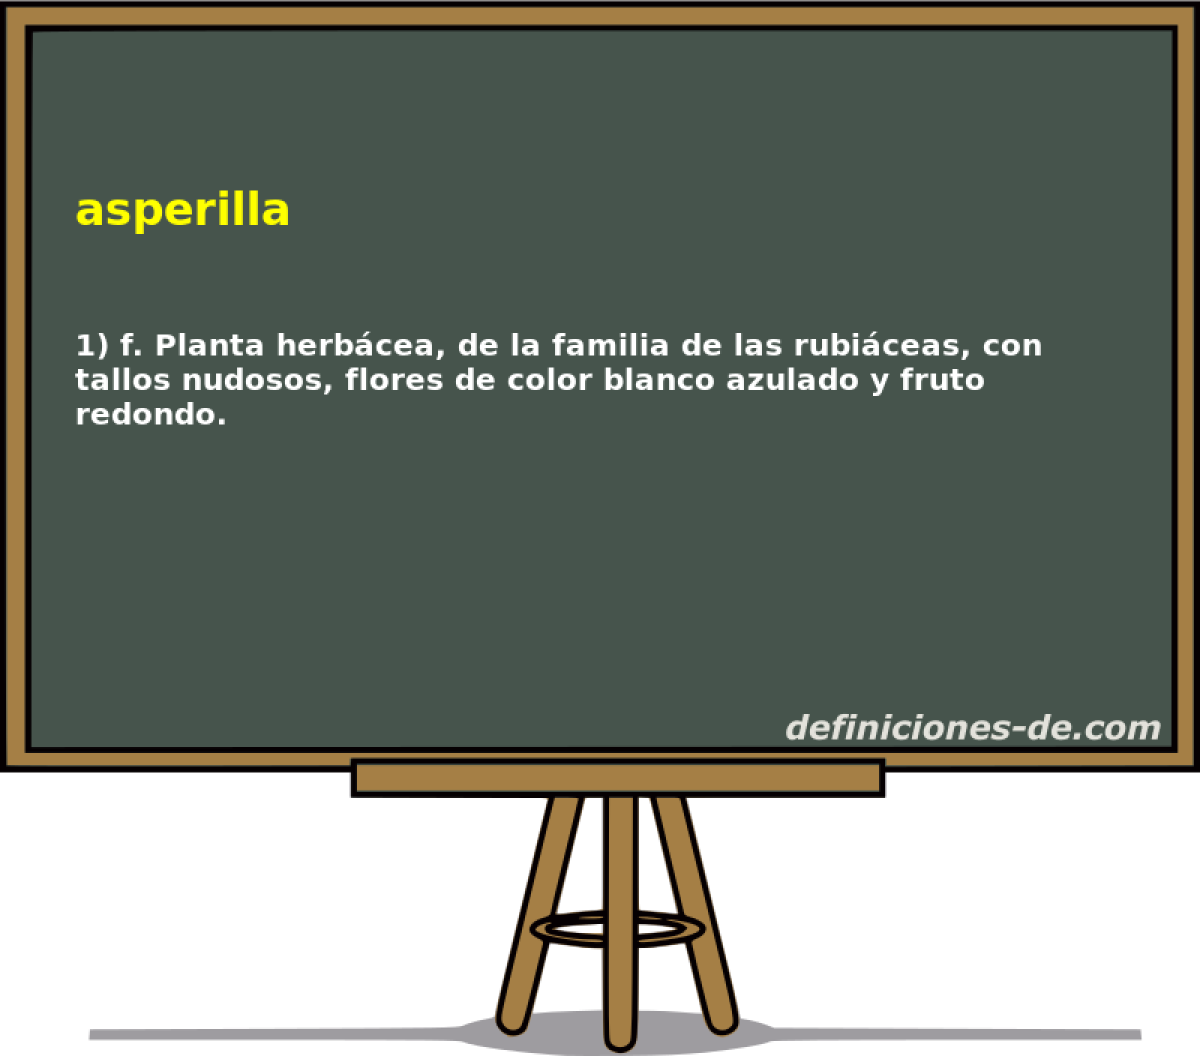 asperilla 